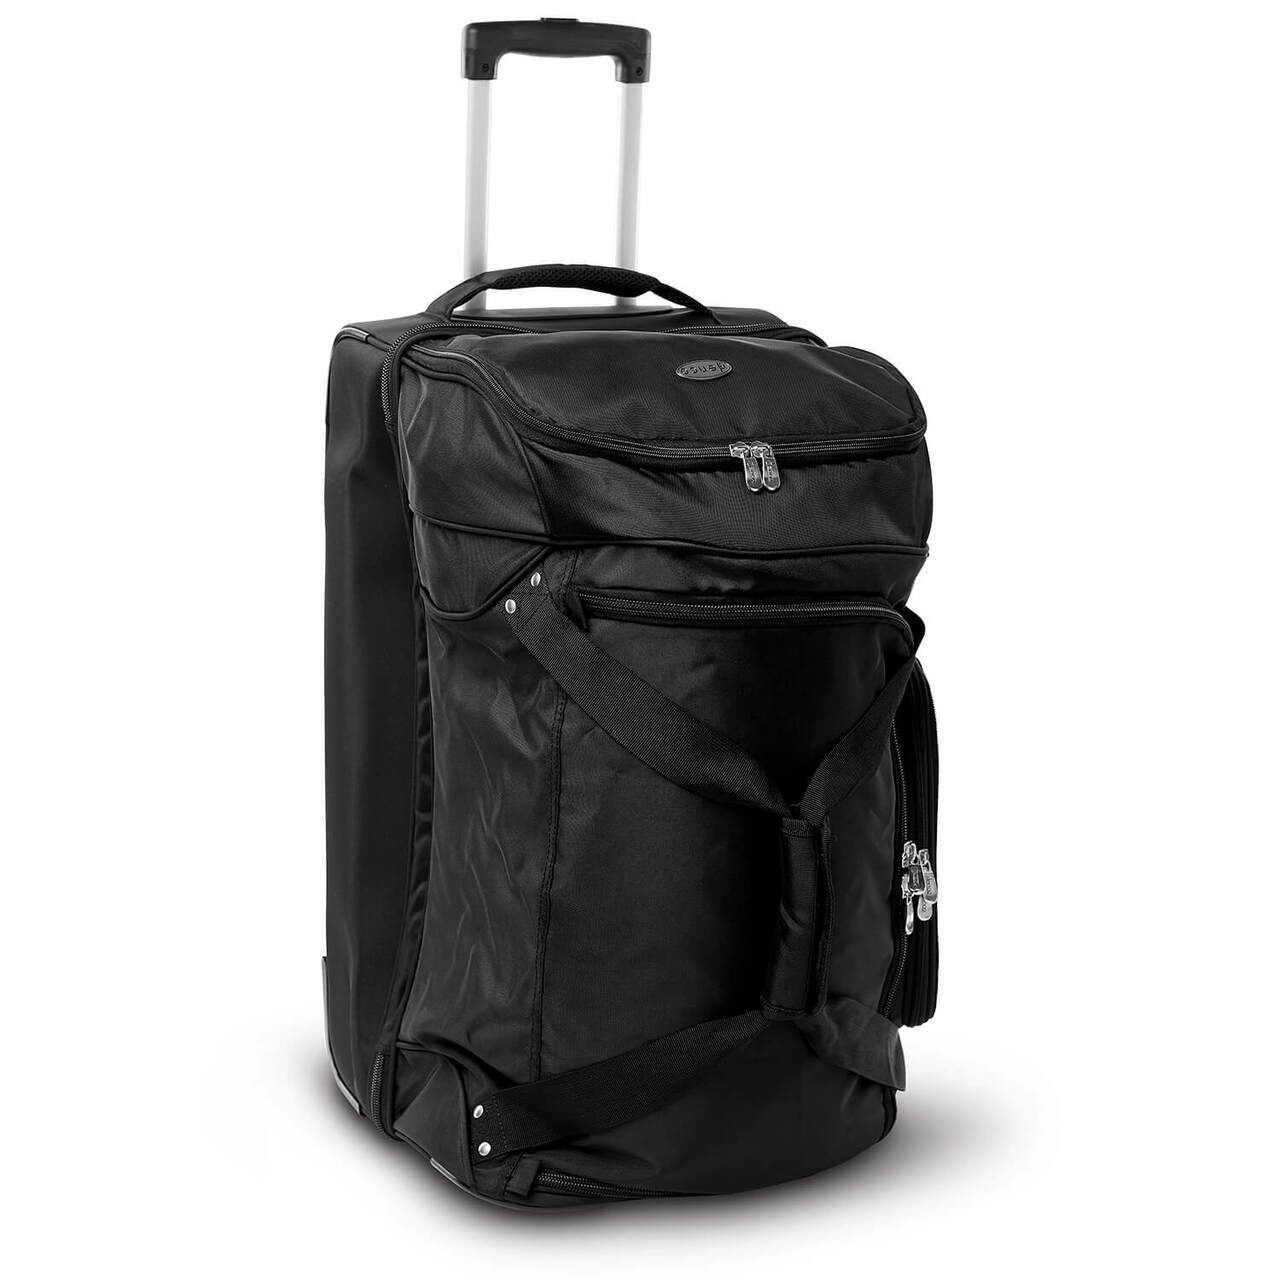 Clemson Luggage | Clemson Wheeled Carry On Luggage